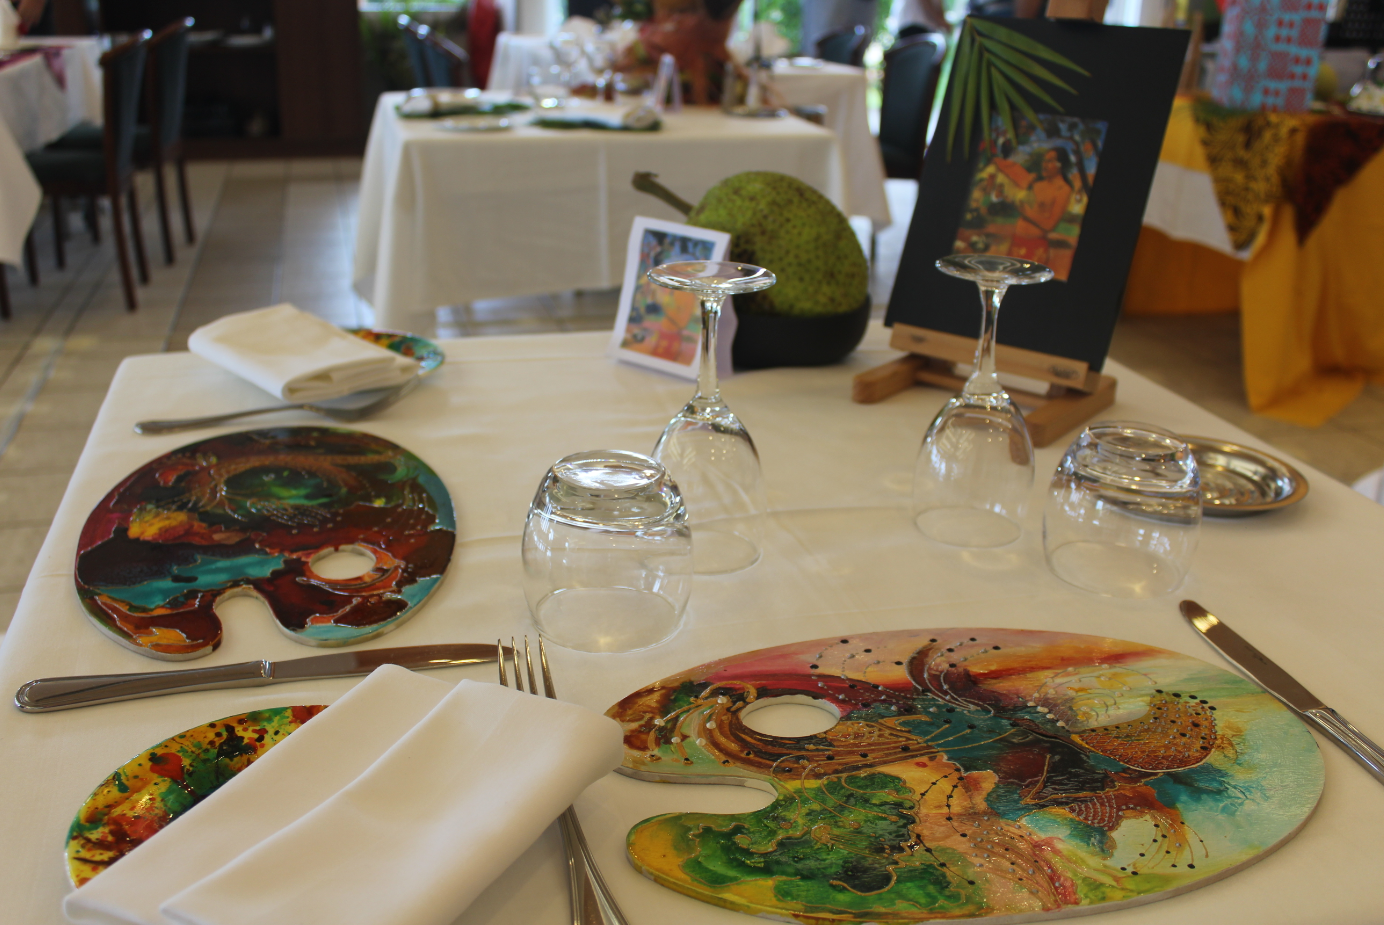 Une table inspirée du tableau de Gauguin " Eu Haere Ia Oe ".